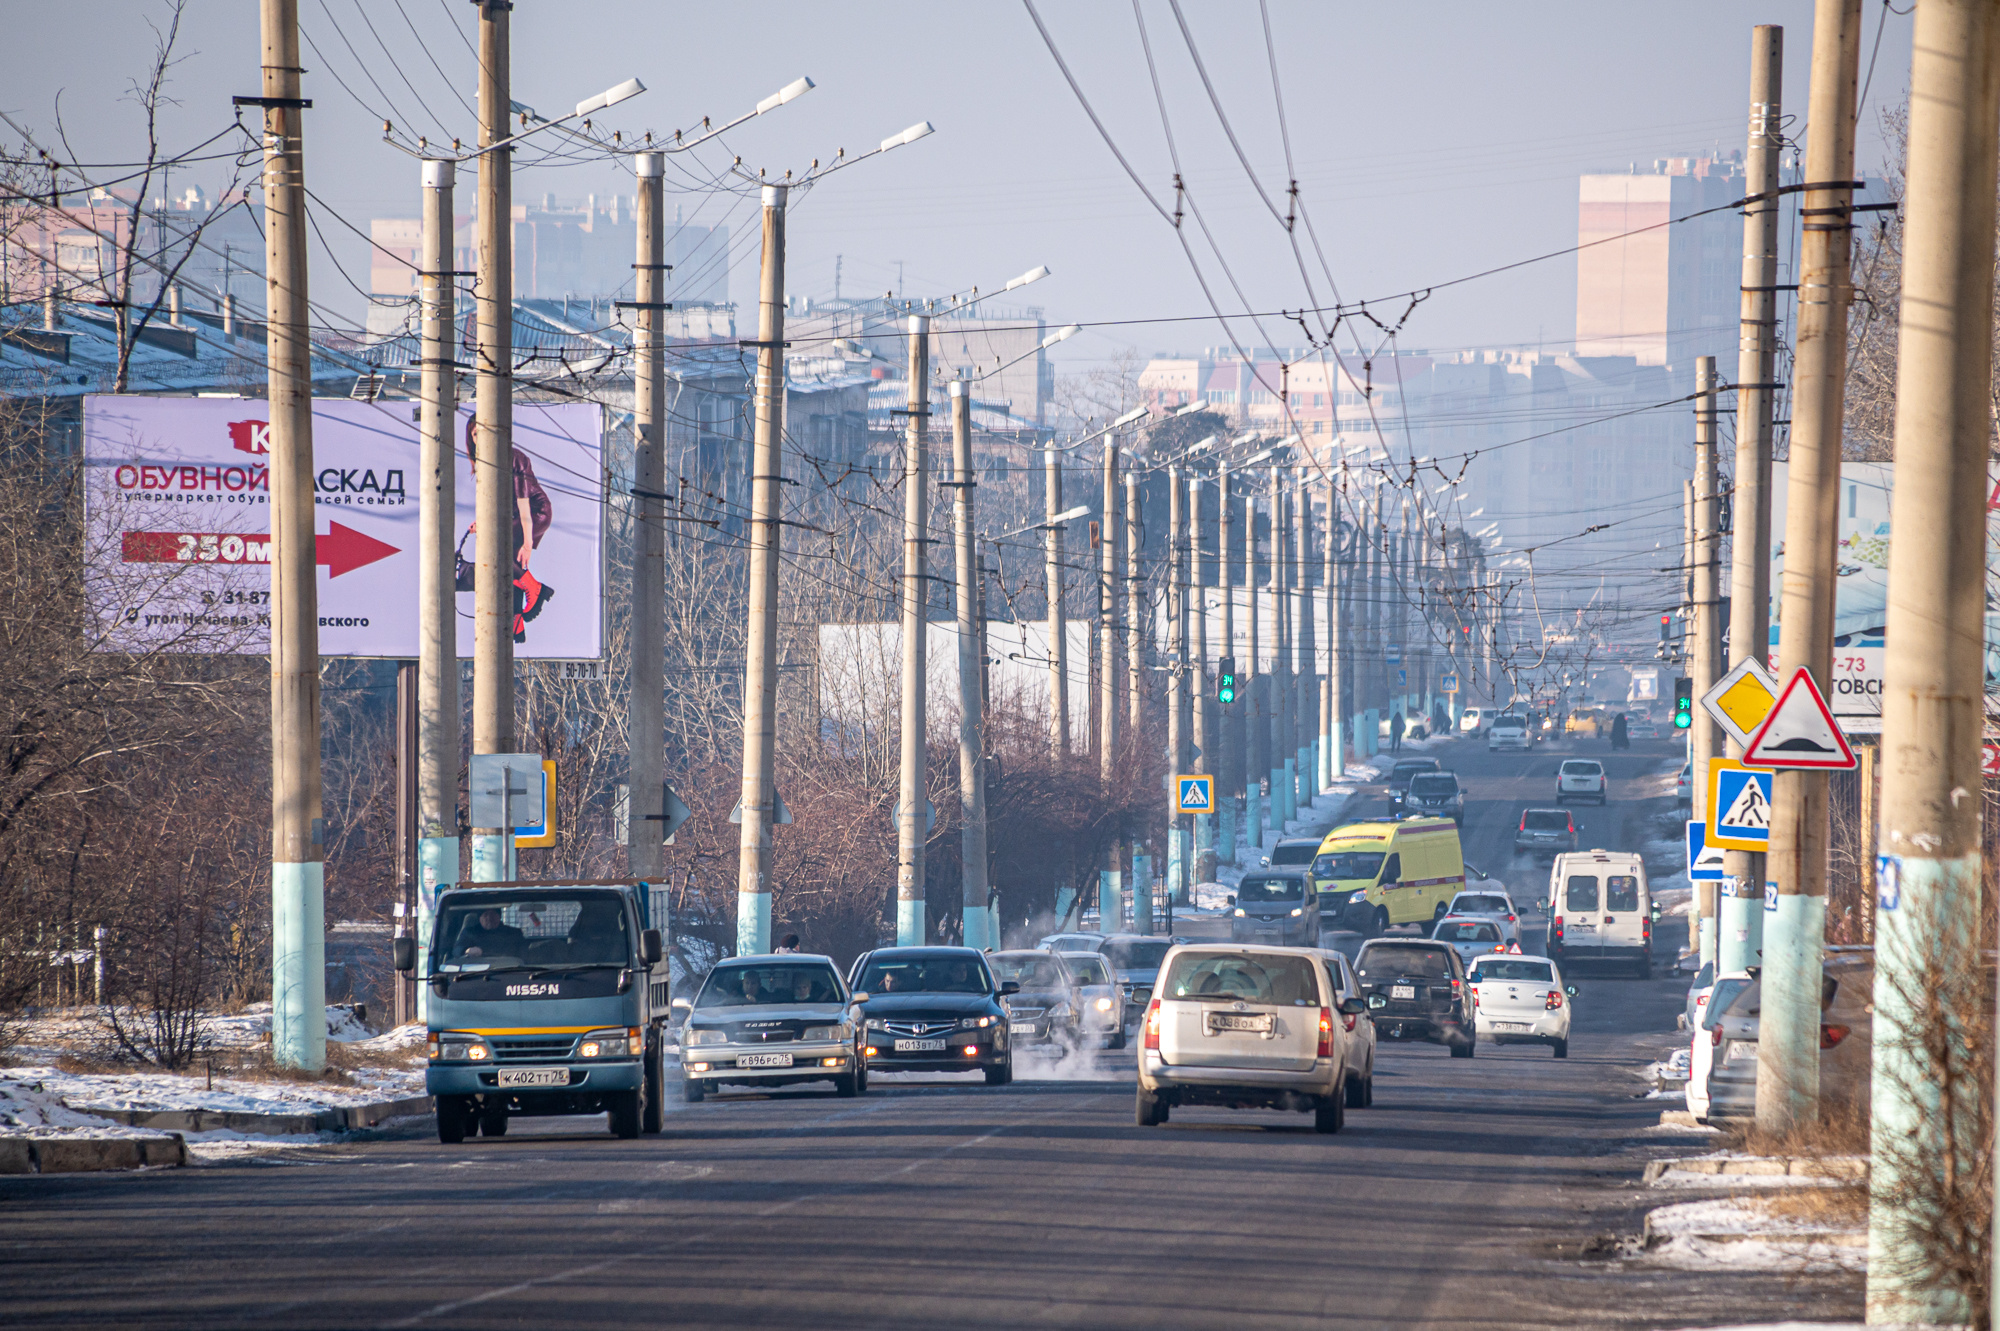 Участок улицы Новобульварной в Чите отремонтируют к осени 2023 года